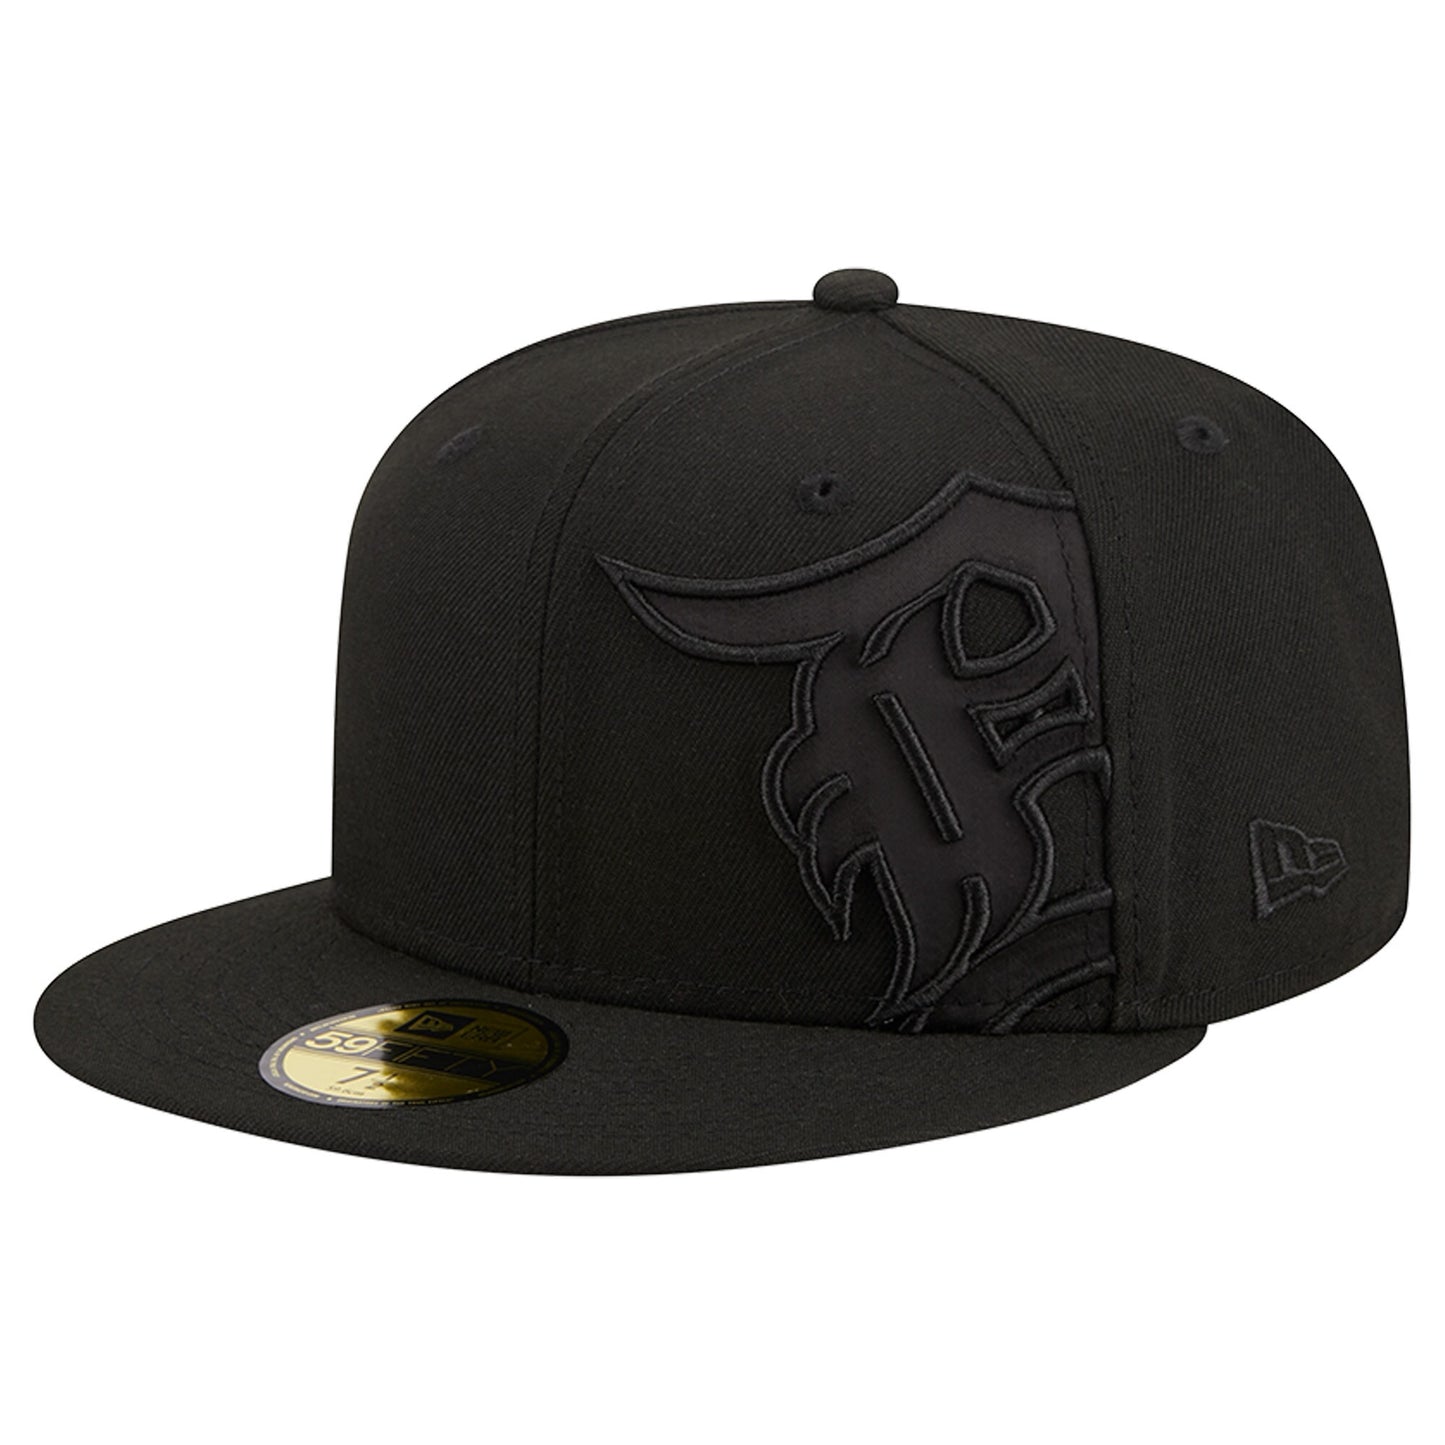 Detroit Tigers New Era Satin Peek 59FIFTY Fitted Hat - Black